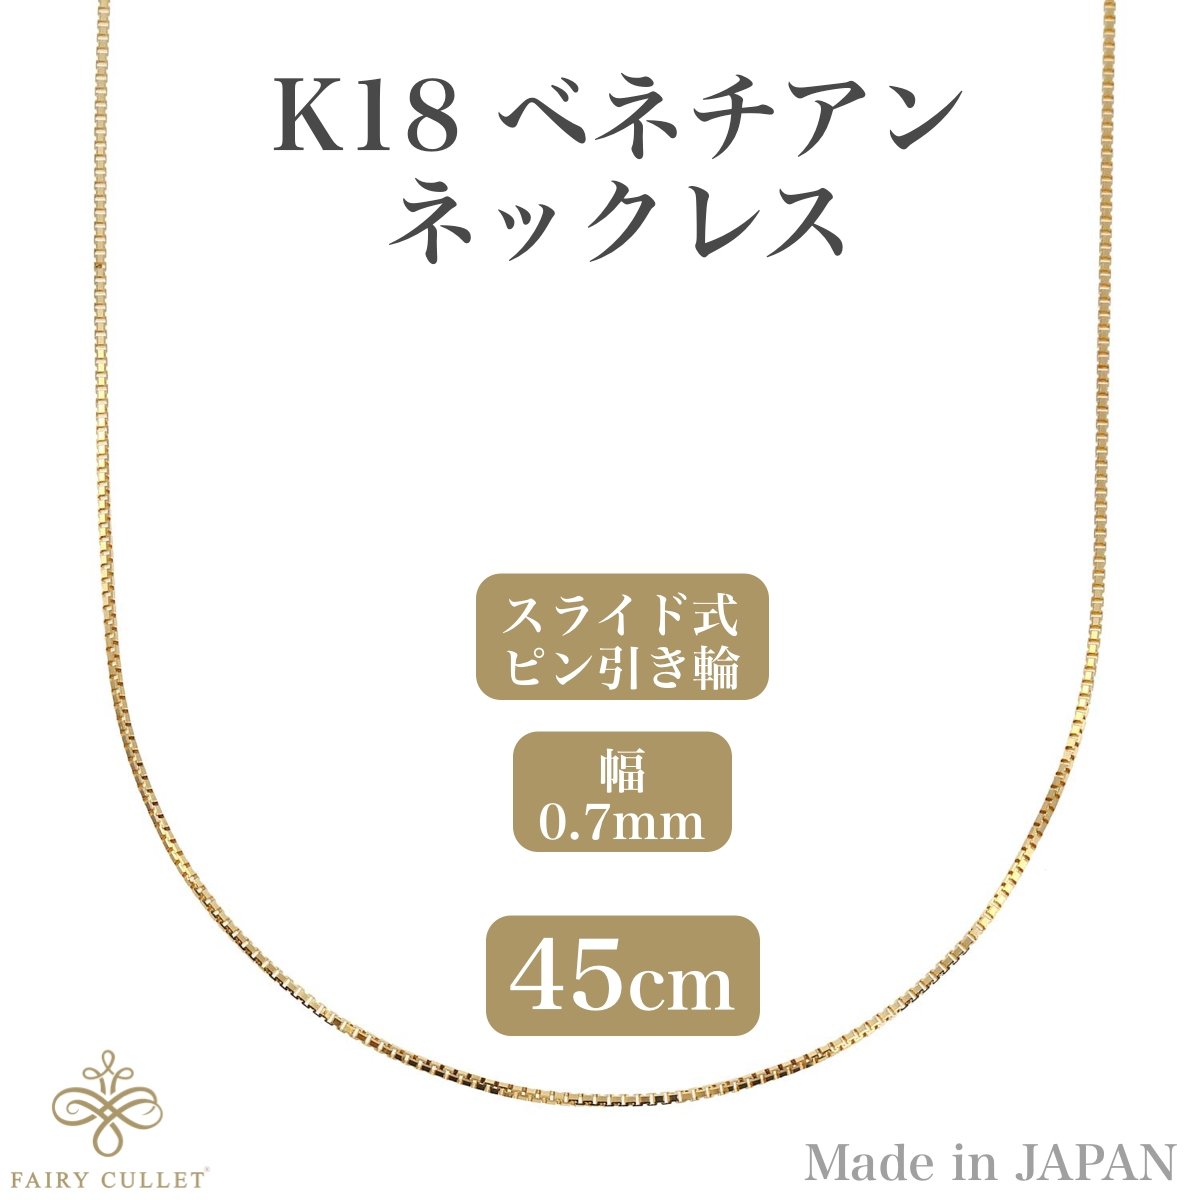 18金ネックレス K18 ベネチアンチェーン 0.85g 0.7mm幅 (45cm スライド